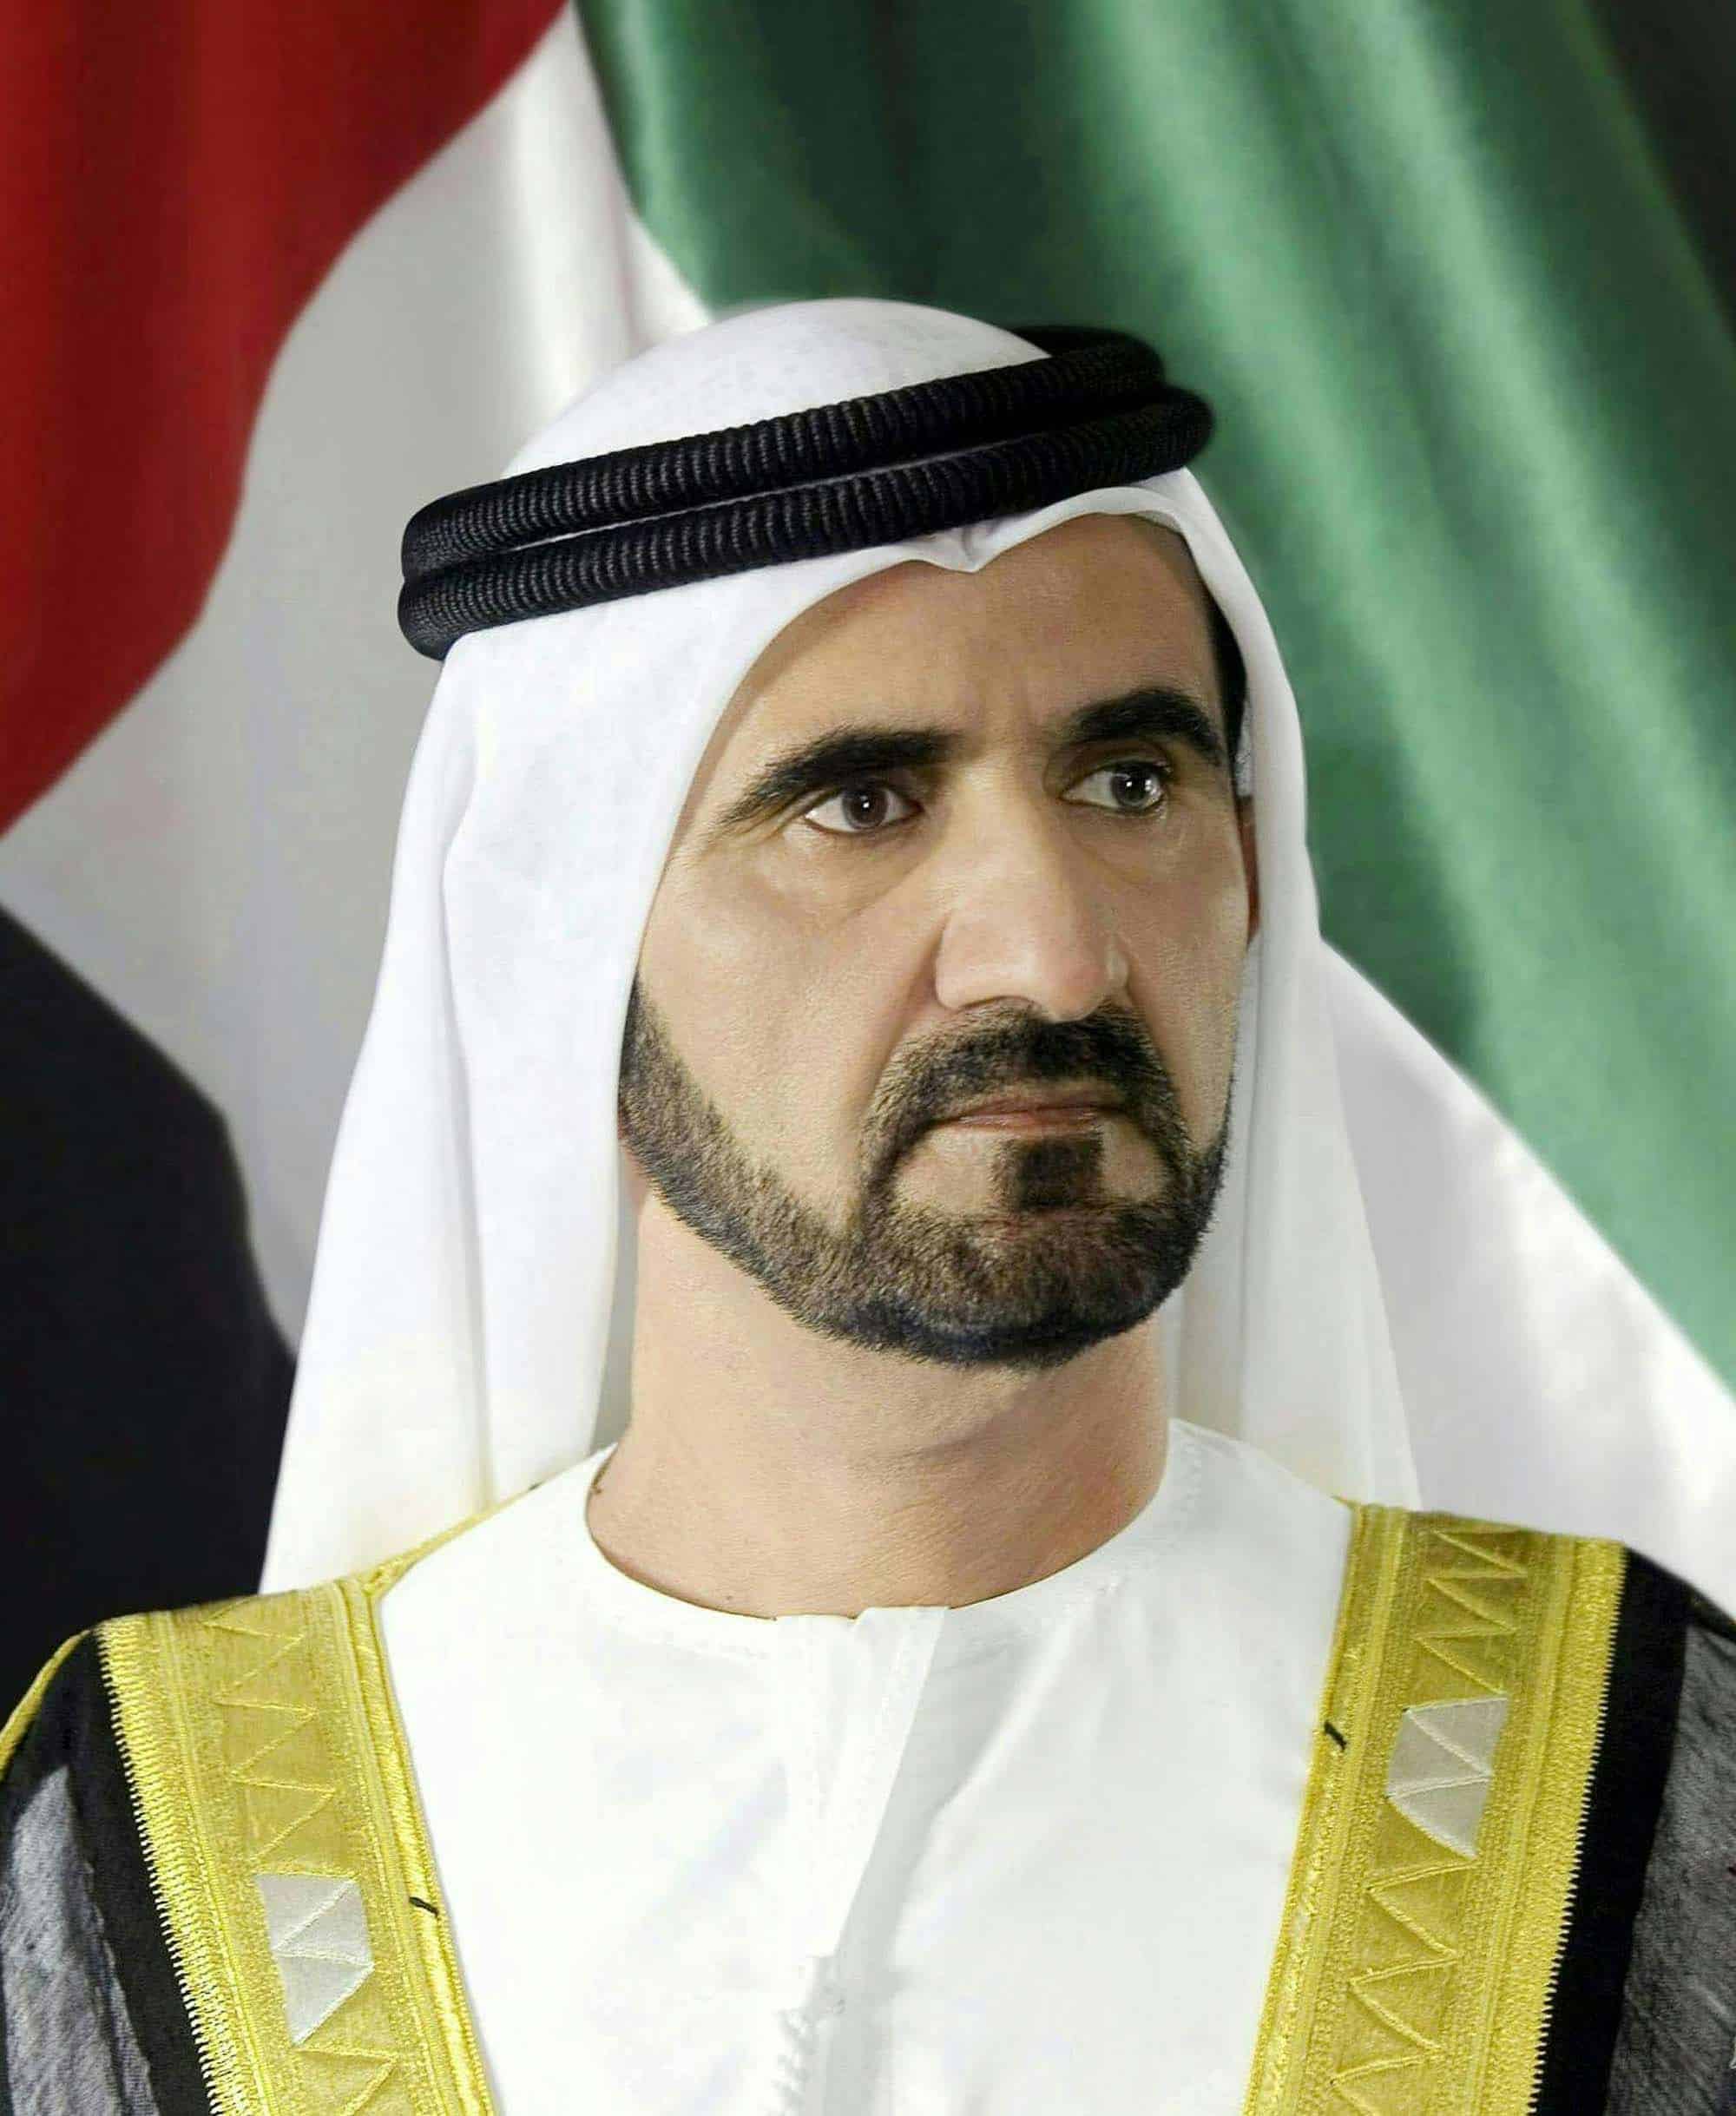 عاجل – محمد بن راشد يمنح مدير عام دائرة الاقتصاد والسياحة في دبي لقب “معالي”